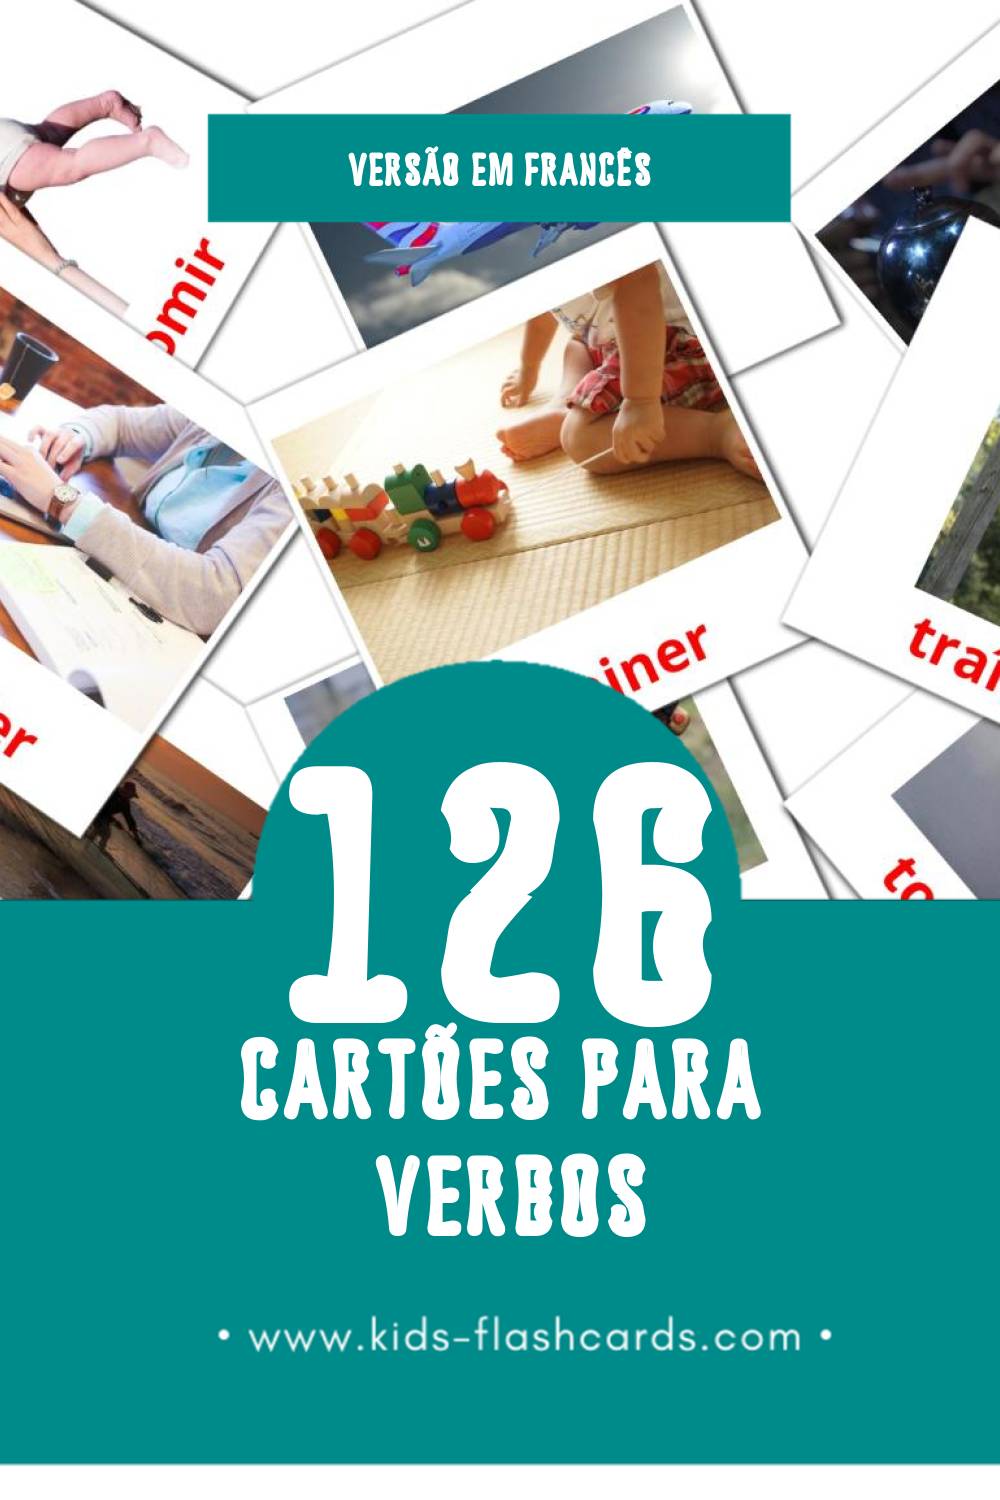 Flashcards de Les Verbes Visuais para Toddlers (126 cartões em Francês)